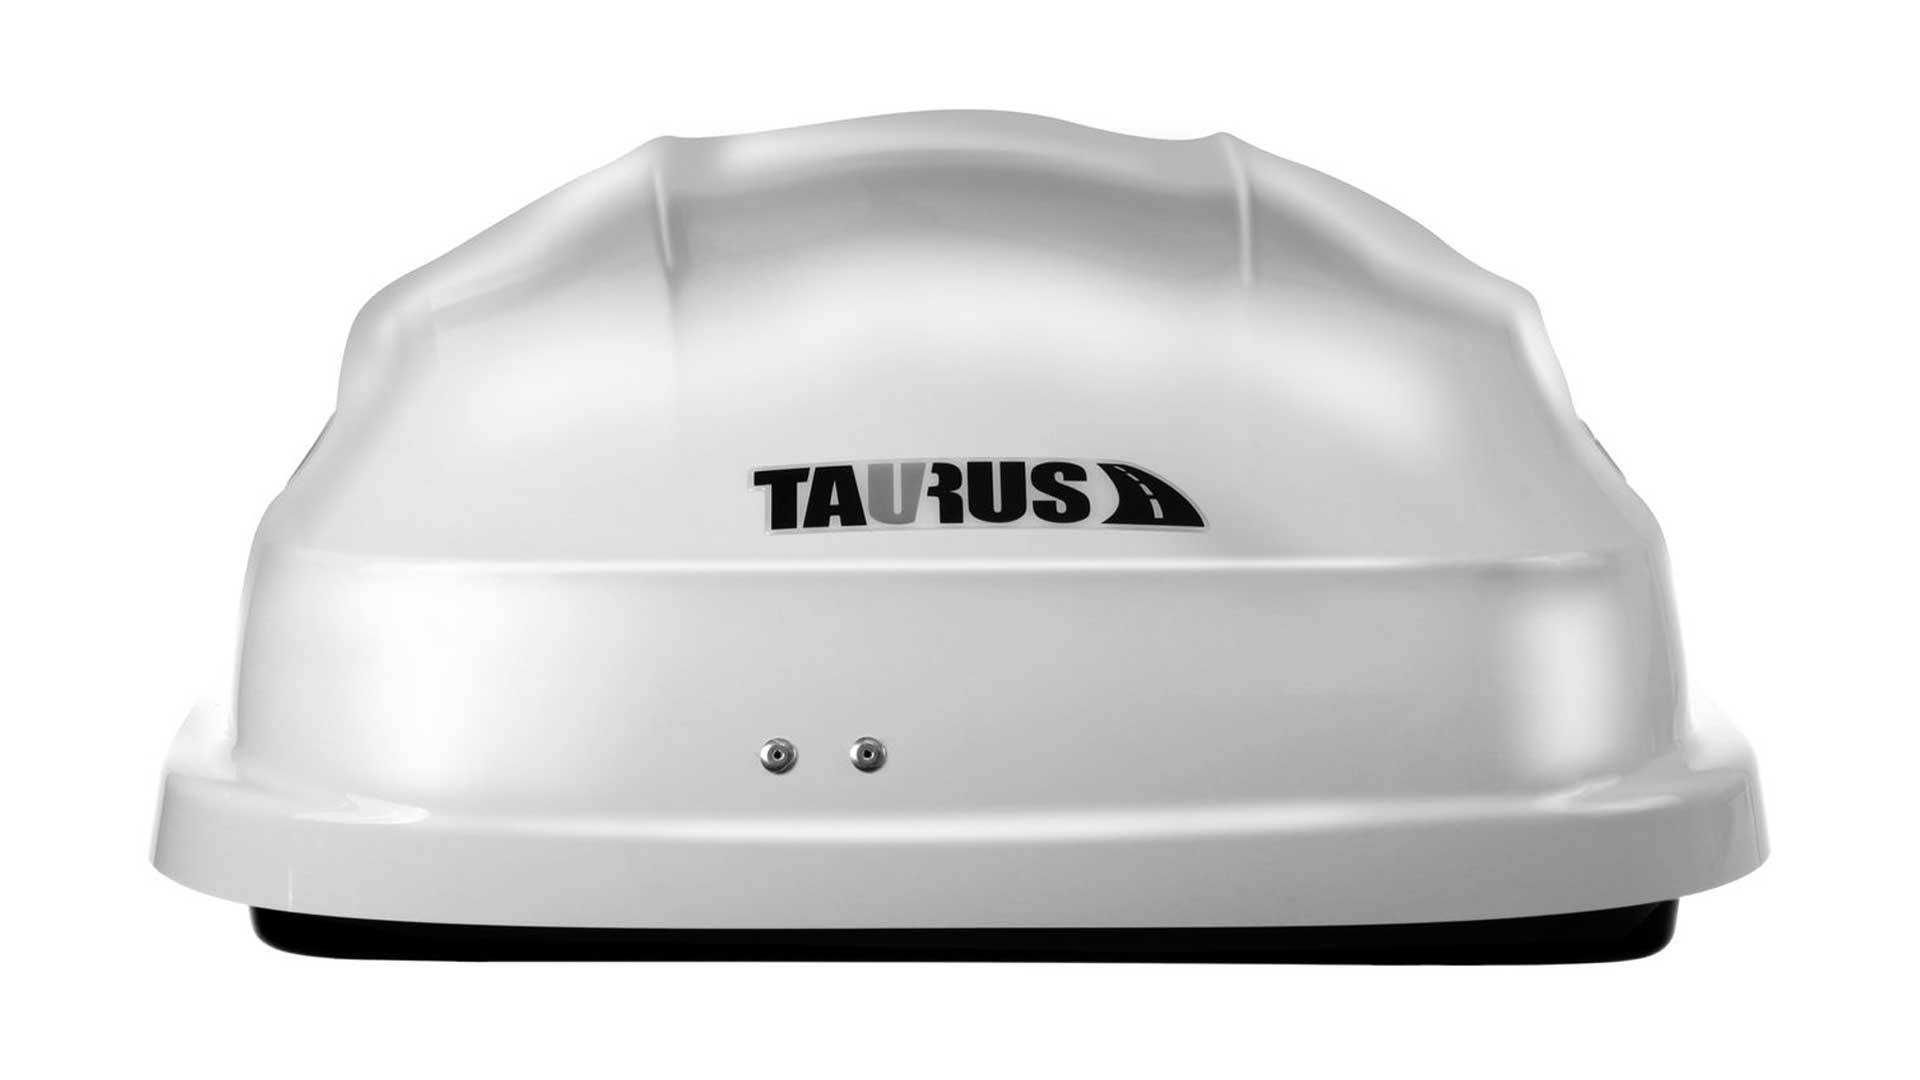 Box dachowy Taurus Altro 460 Super wygląd Aerodynamiczny Biały połysk